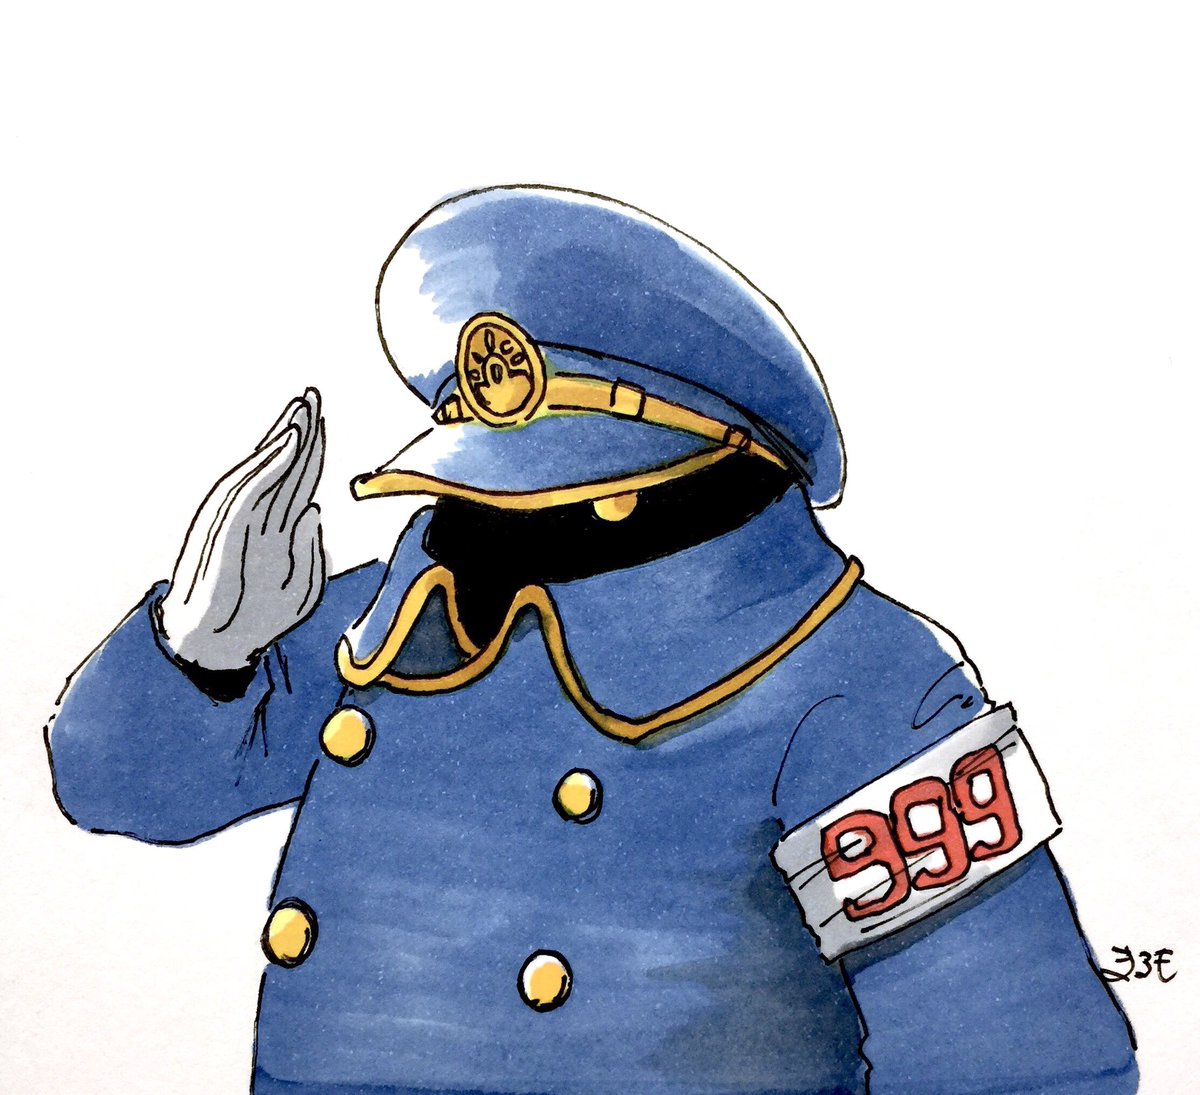 salute armband solo uniform hat white background gloves  illustration images